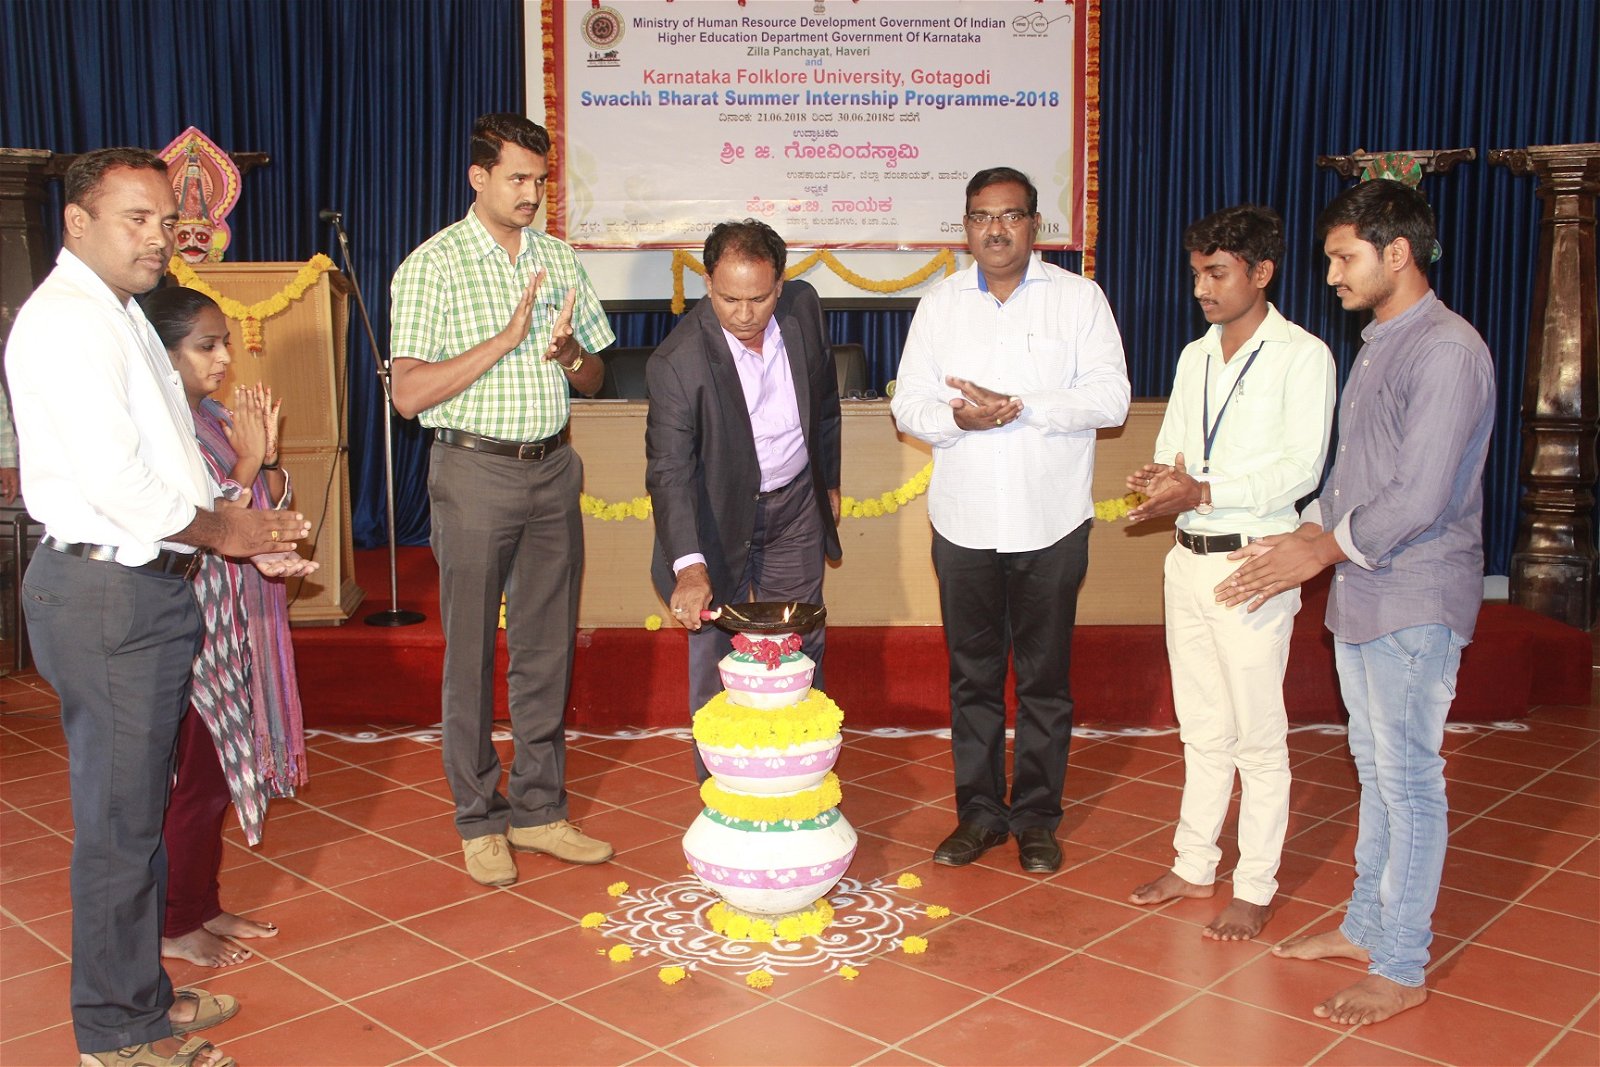 Function at Karnataka Folklore University in Haveri